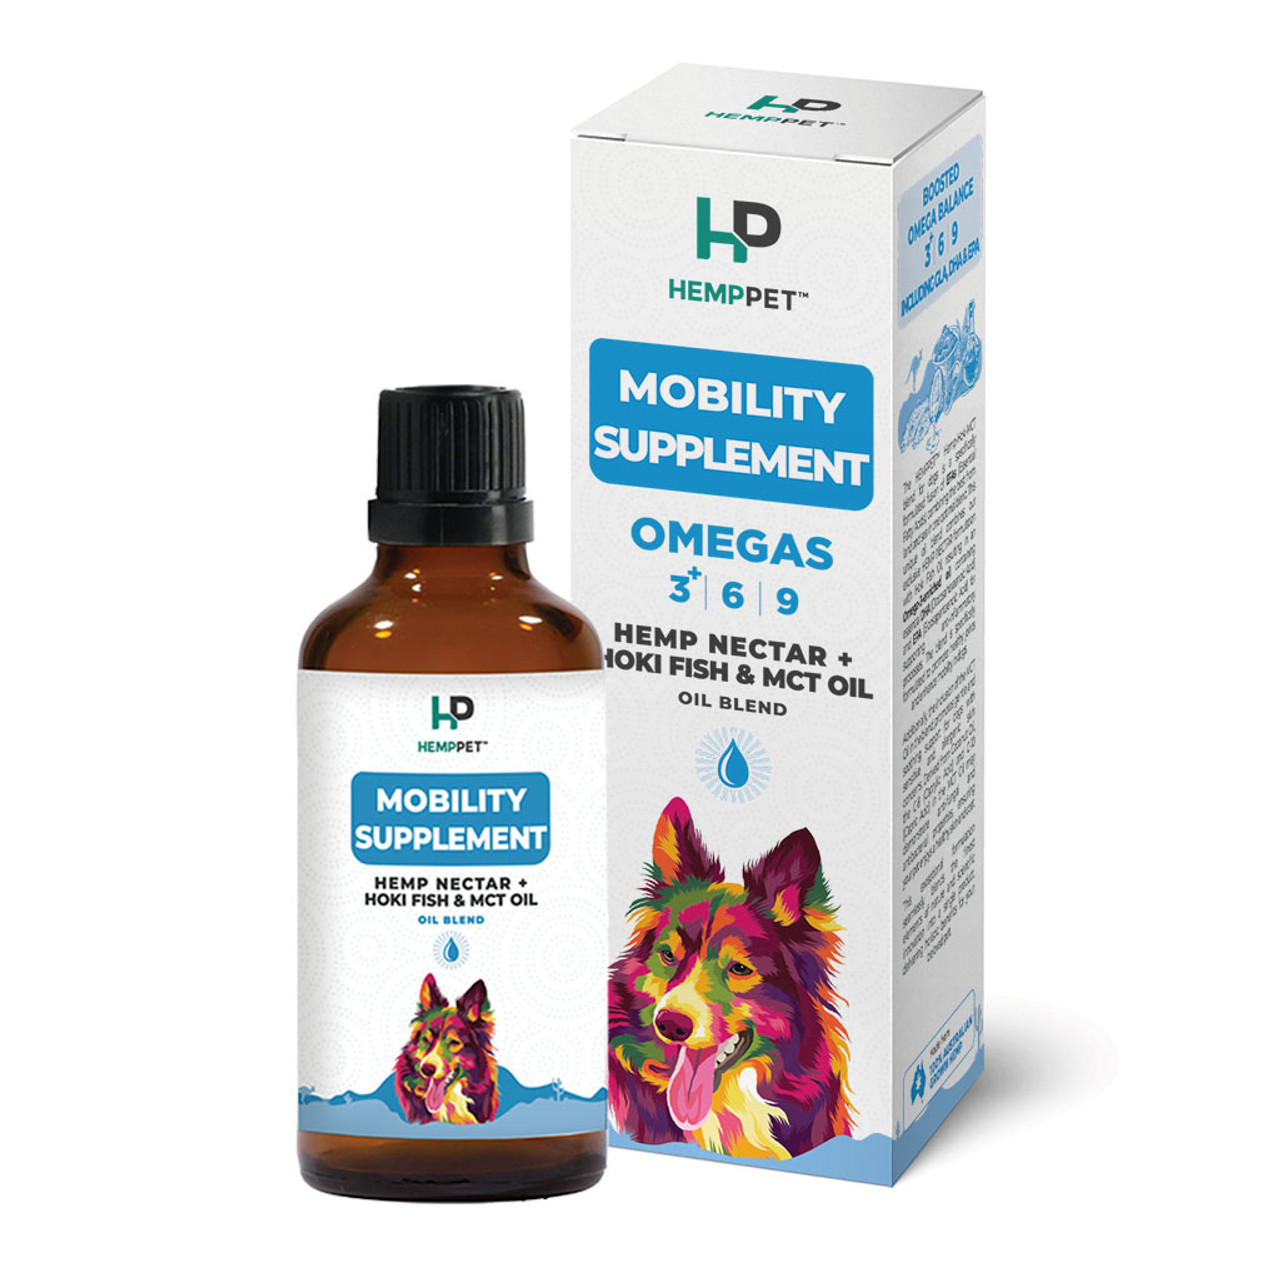 HempPet Mobility Supplement Hemp Seed Nectar Oil Blend + Hoki Fish & MCT Oil For Dogs 100ml (3.38 fl oz)